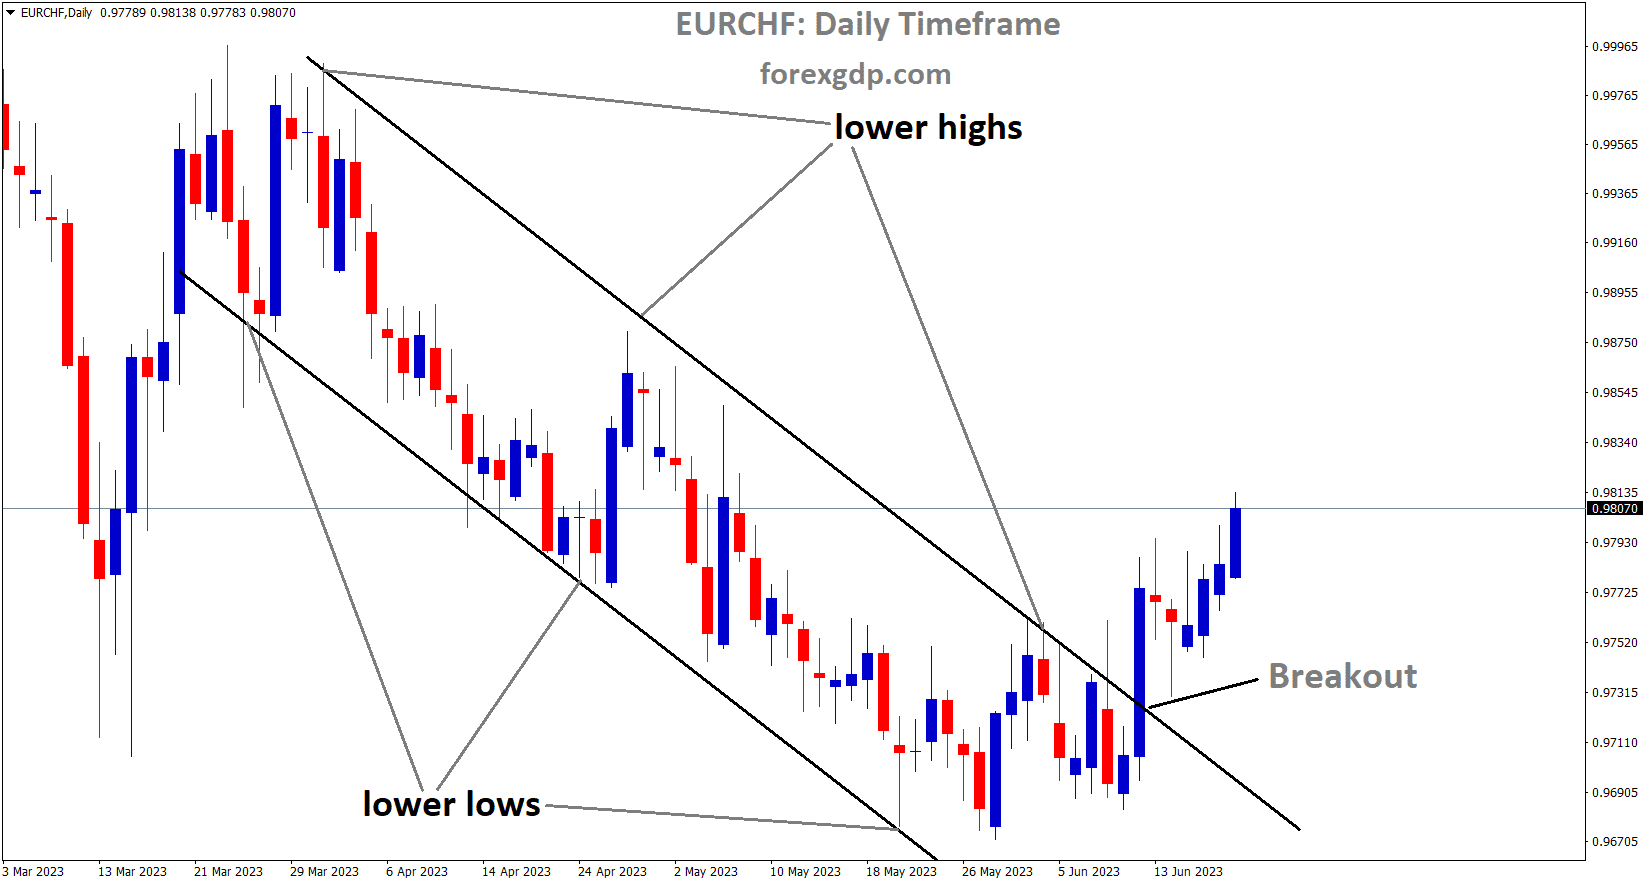 EURCHF has broken the Descending channel in upside 2